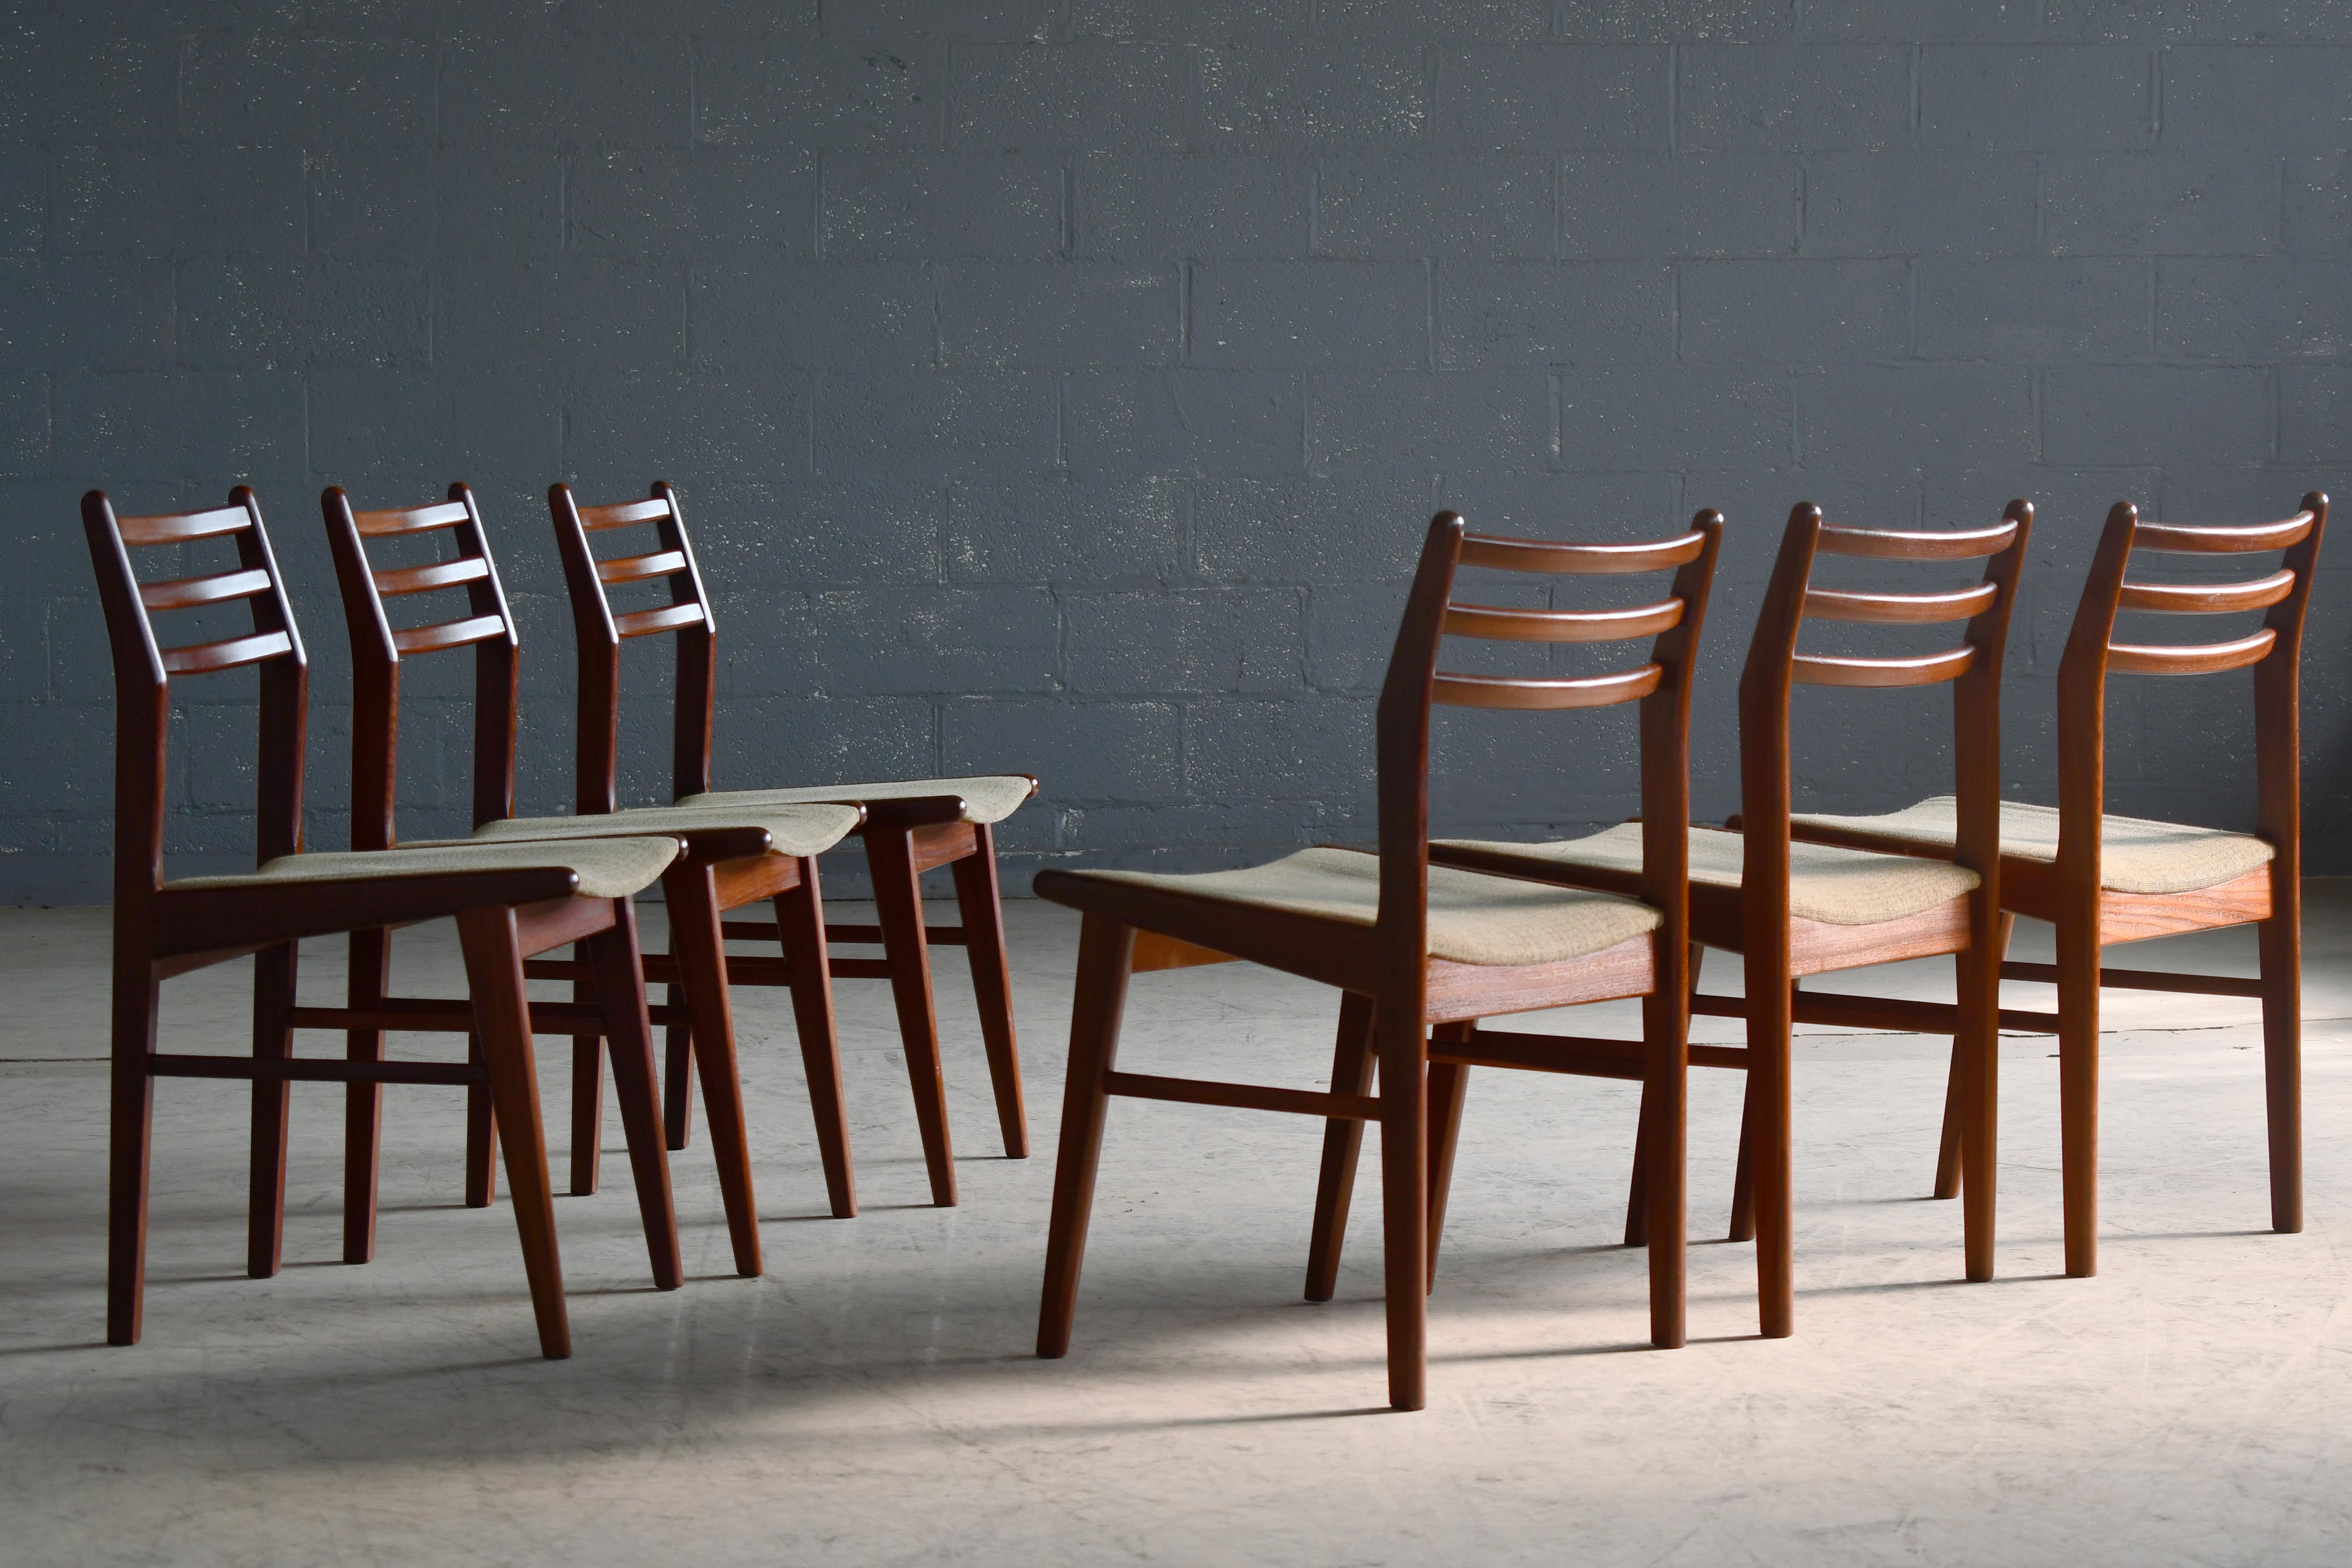 Superbe ensemble de six chaises de salle à manger conçues dans les années 1960 par Mogens Hansen et fabriquées dans sa propre usine. Fabriqué en teck massif foncé avec une belle couleur profonde et un grain magnifique. De nombreux détails de